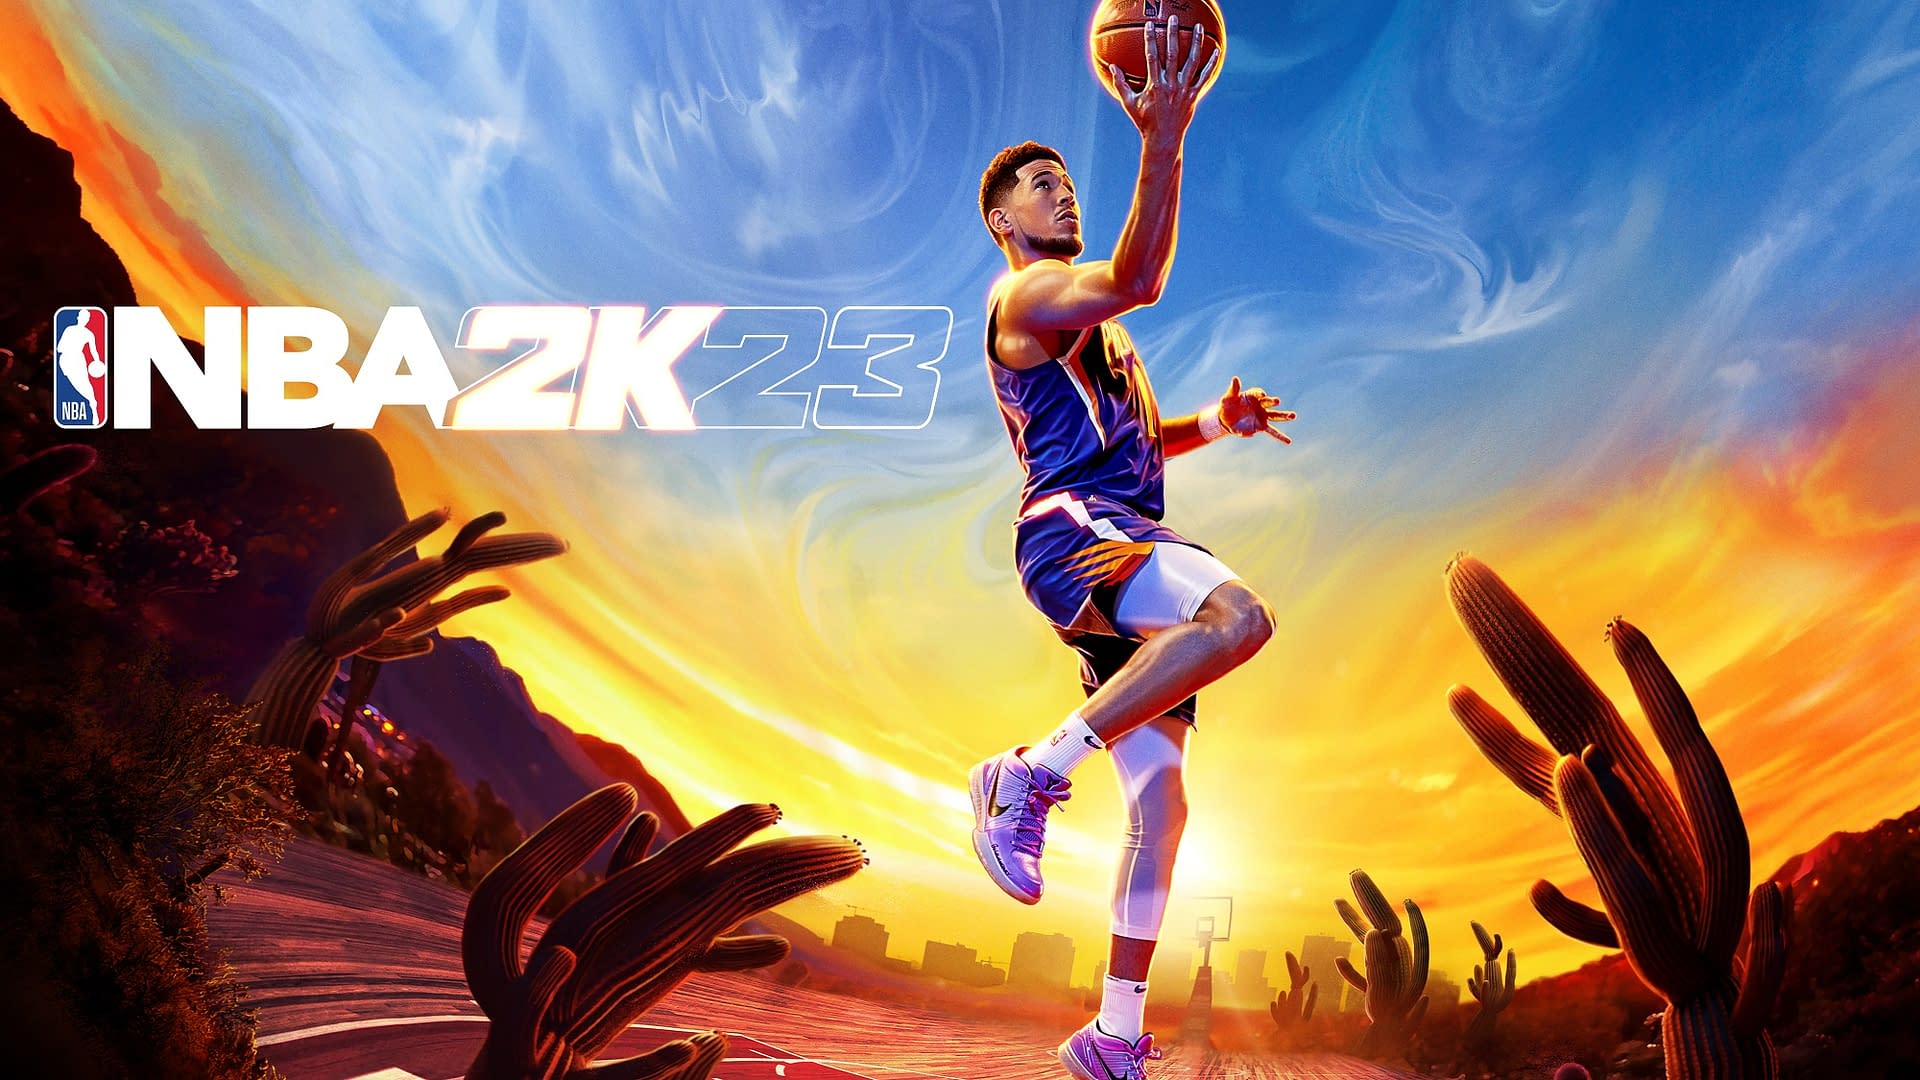 Điểm nhấn của NBA 2K23 nằm ở chính người hùng trên bìa, với khả năng vượt qua những thử thách khó khăn nhất trên sân bóng. Đây là một game không chỉ dành cho những fan hâm mộ của bóng rổ, mà còn cho những ai yêu thích sự thử thách và đam mê cảm giác chiến thắng.